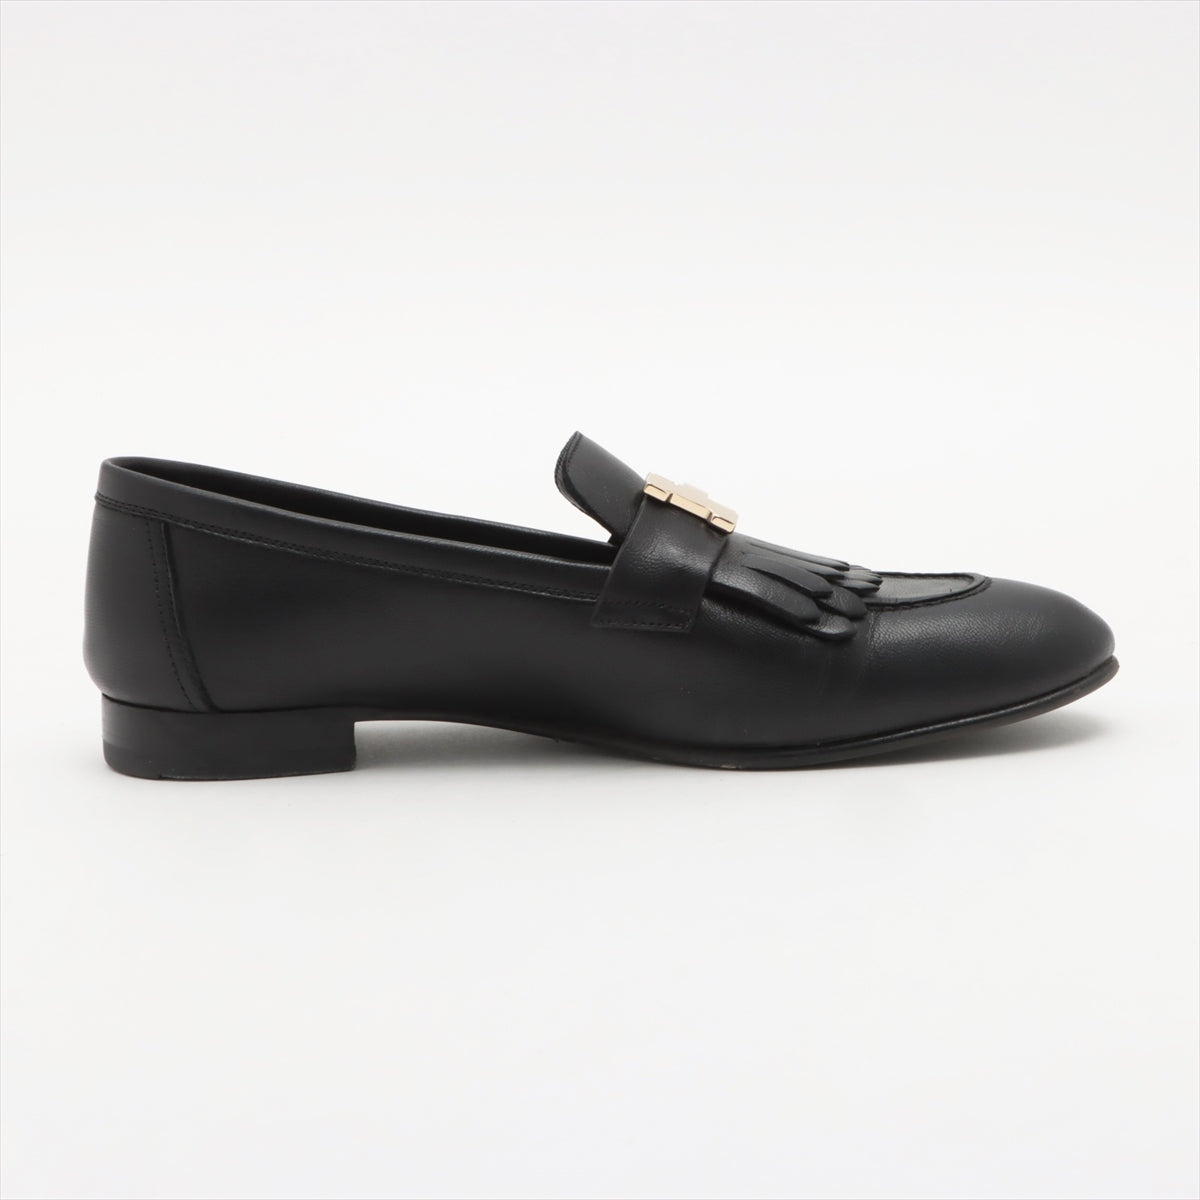 Hermès Royal Leather Loafer 37 Ladies' Black Constance Fringe